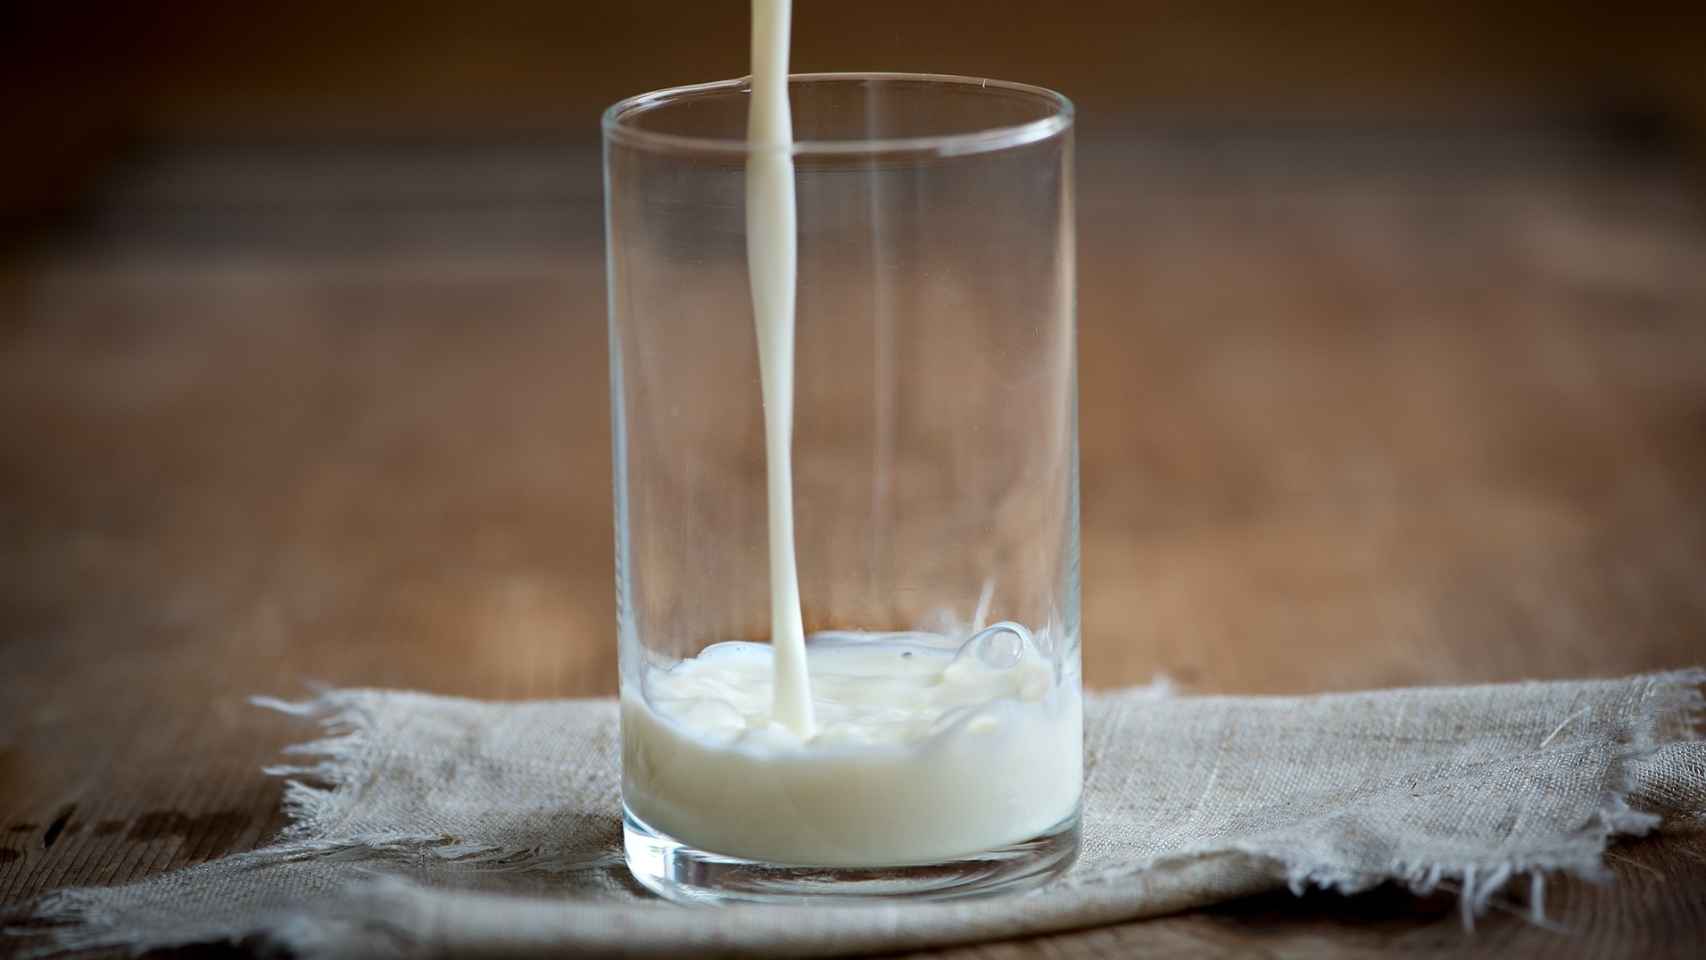 Un vaso de leche cruda, recién salida de la vaca.